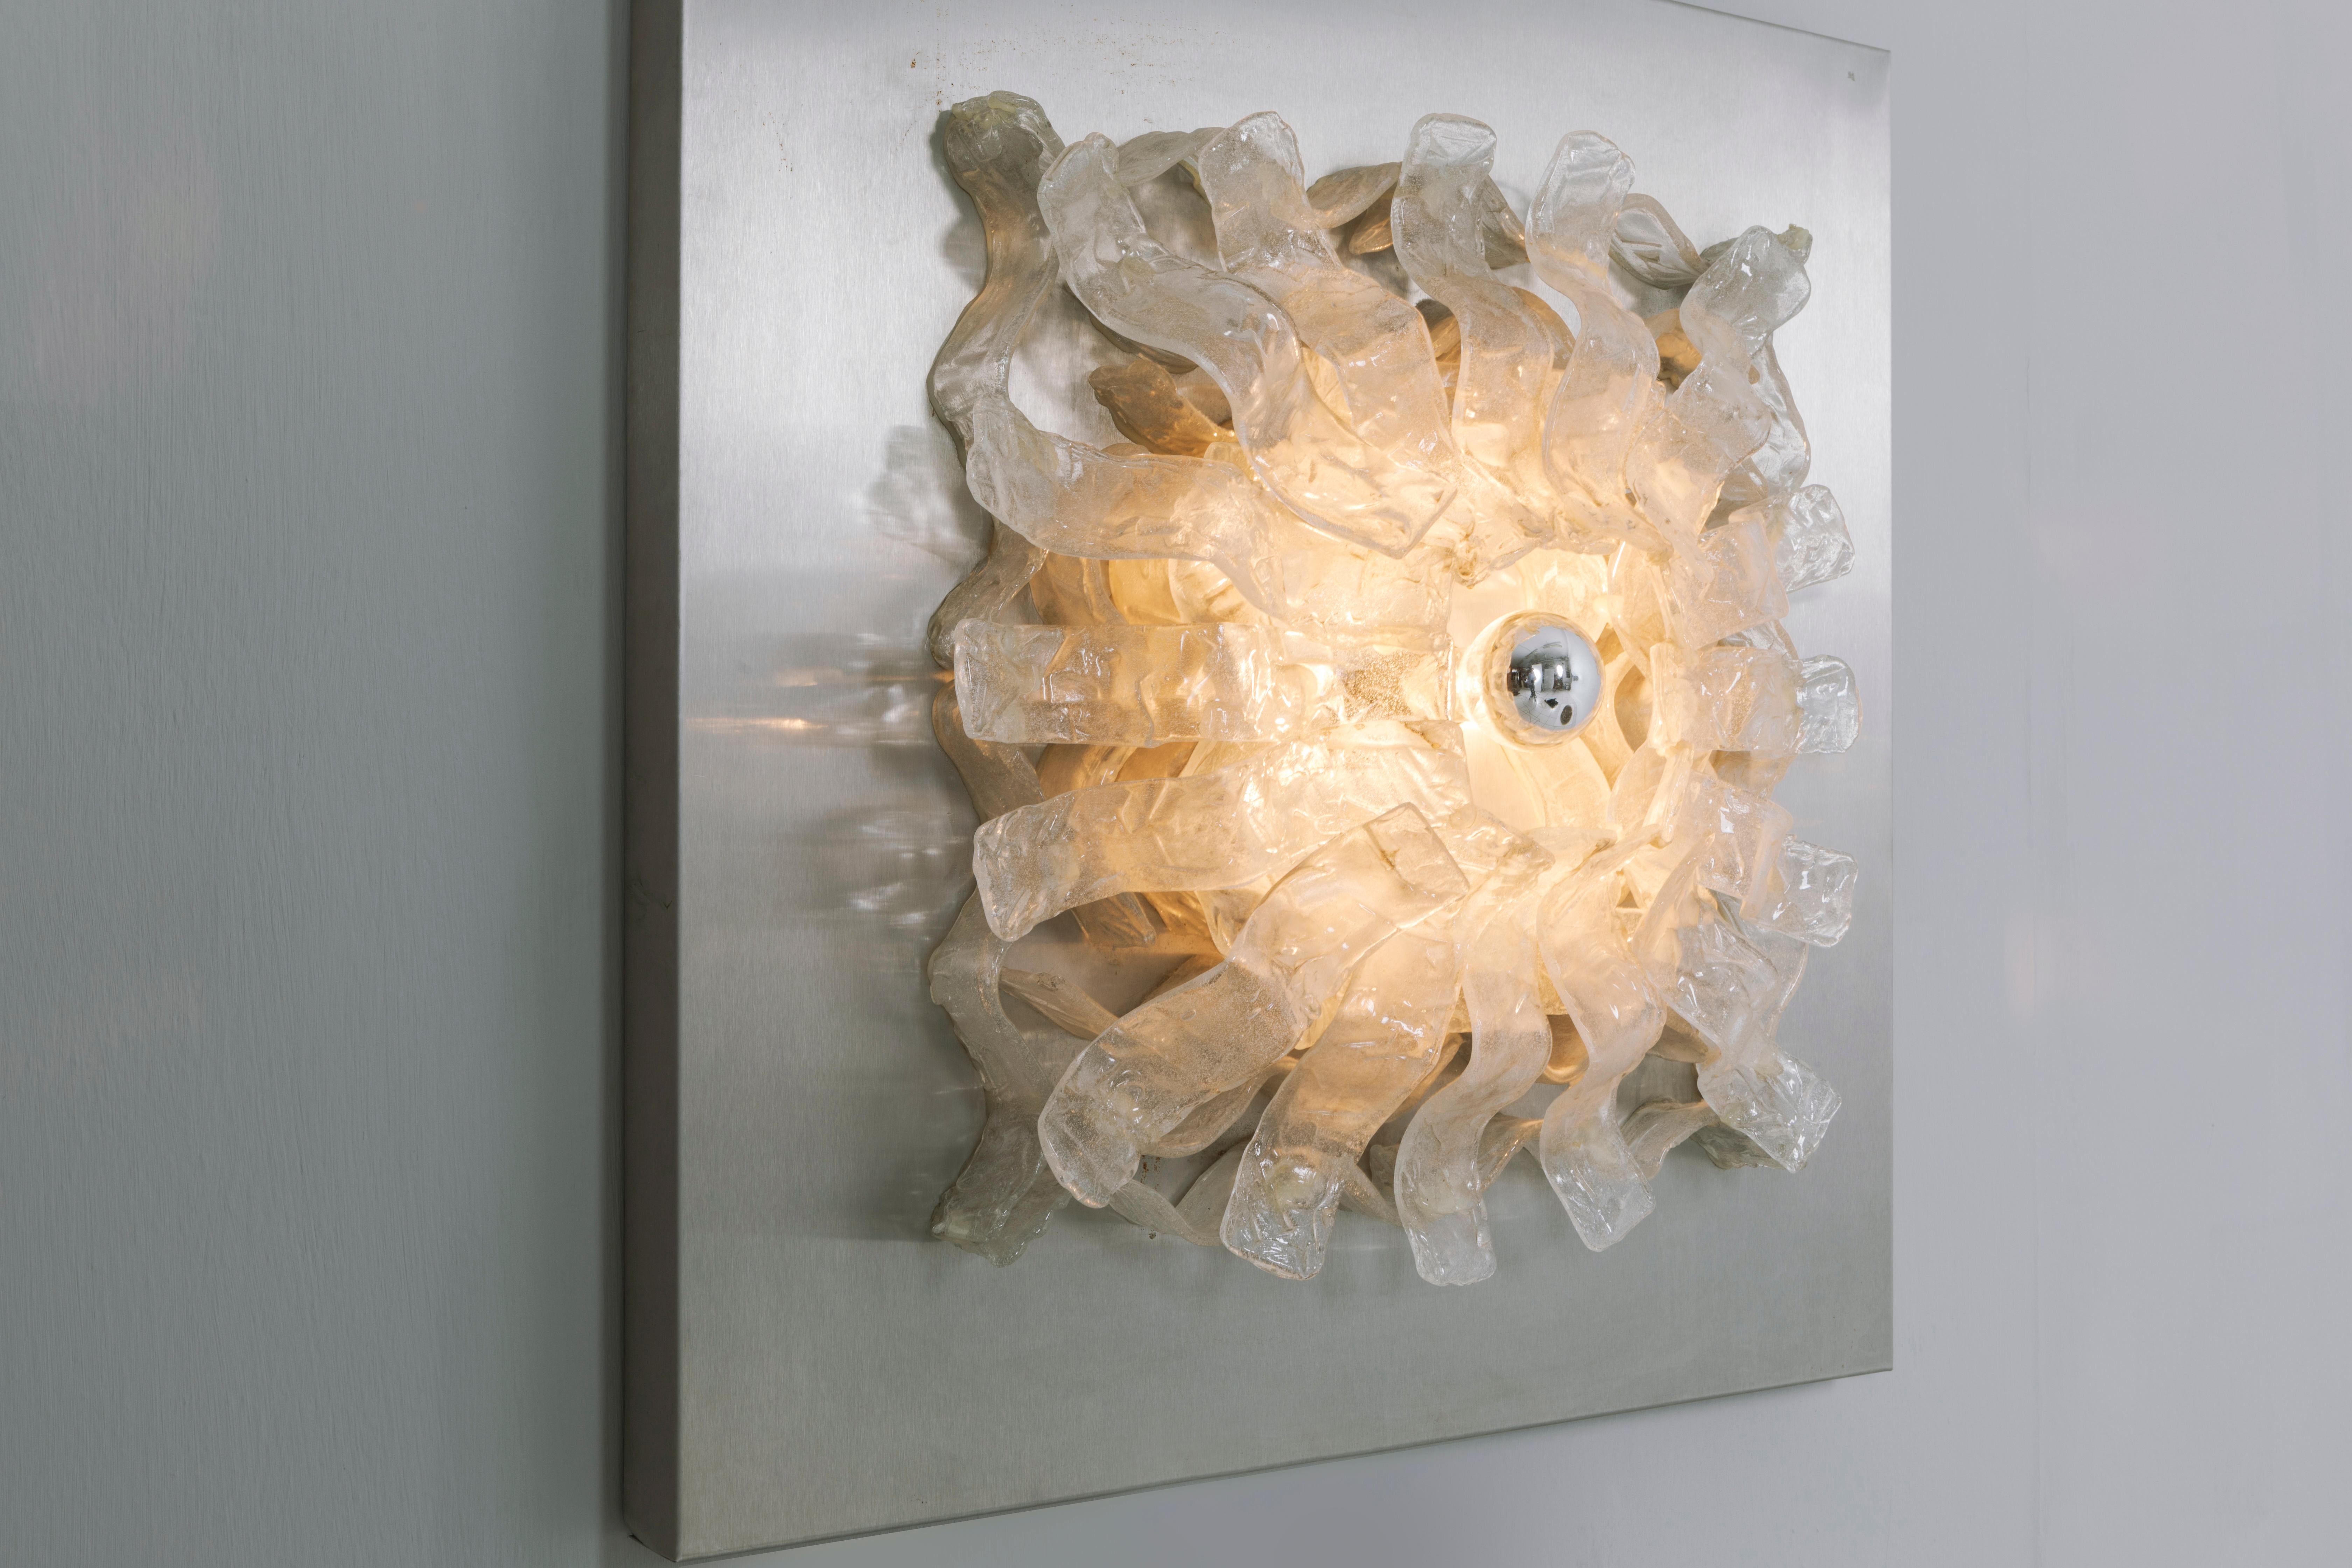 Seltene, von Angelo Brotto entworfene und von Esperia Mitte der 1970er Jahre hergestellte Leuchtplatte. Dekoration durch übereinander liegende Muranoglaszungen